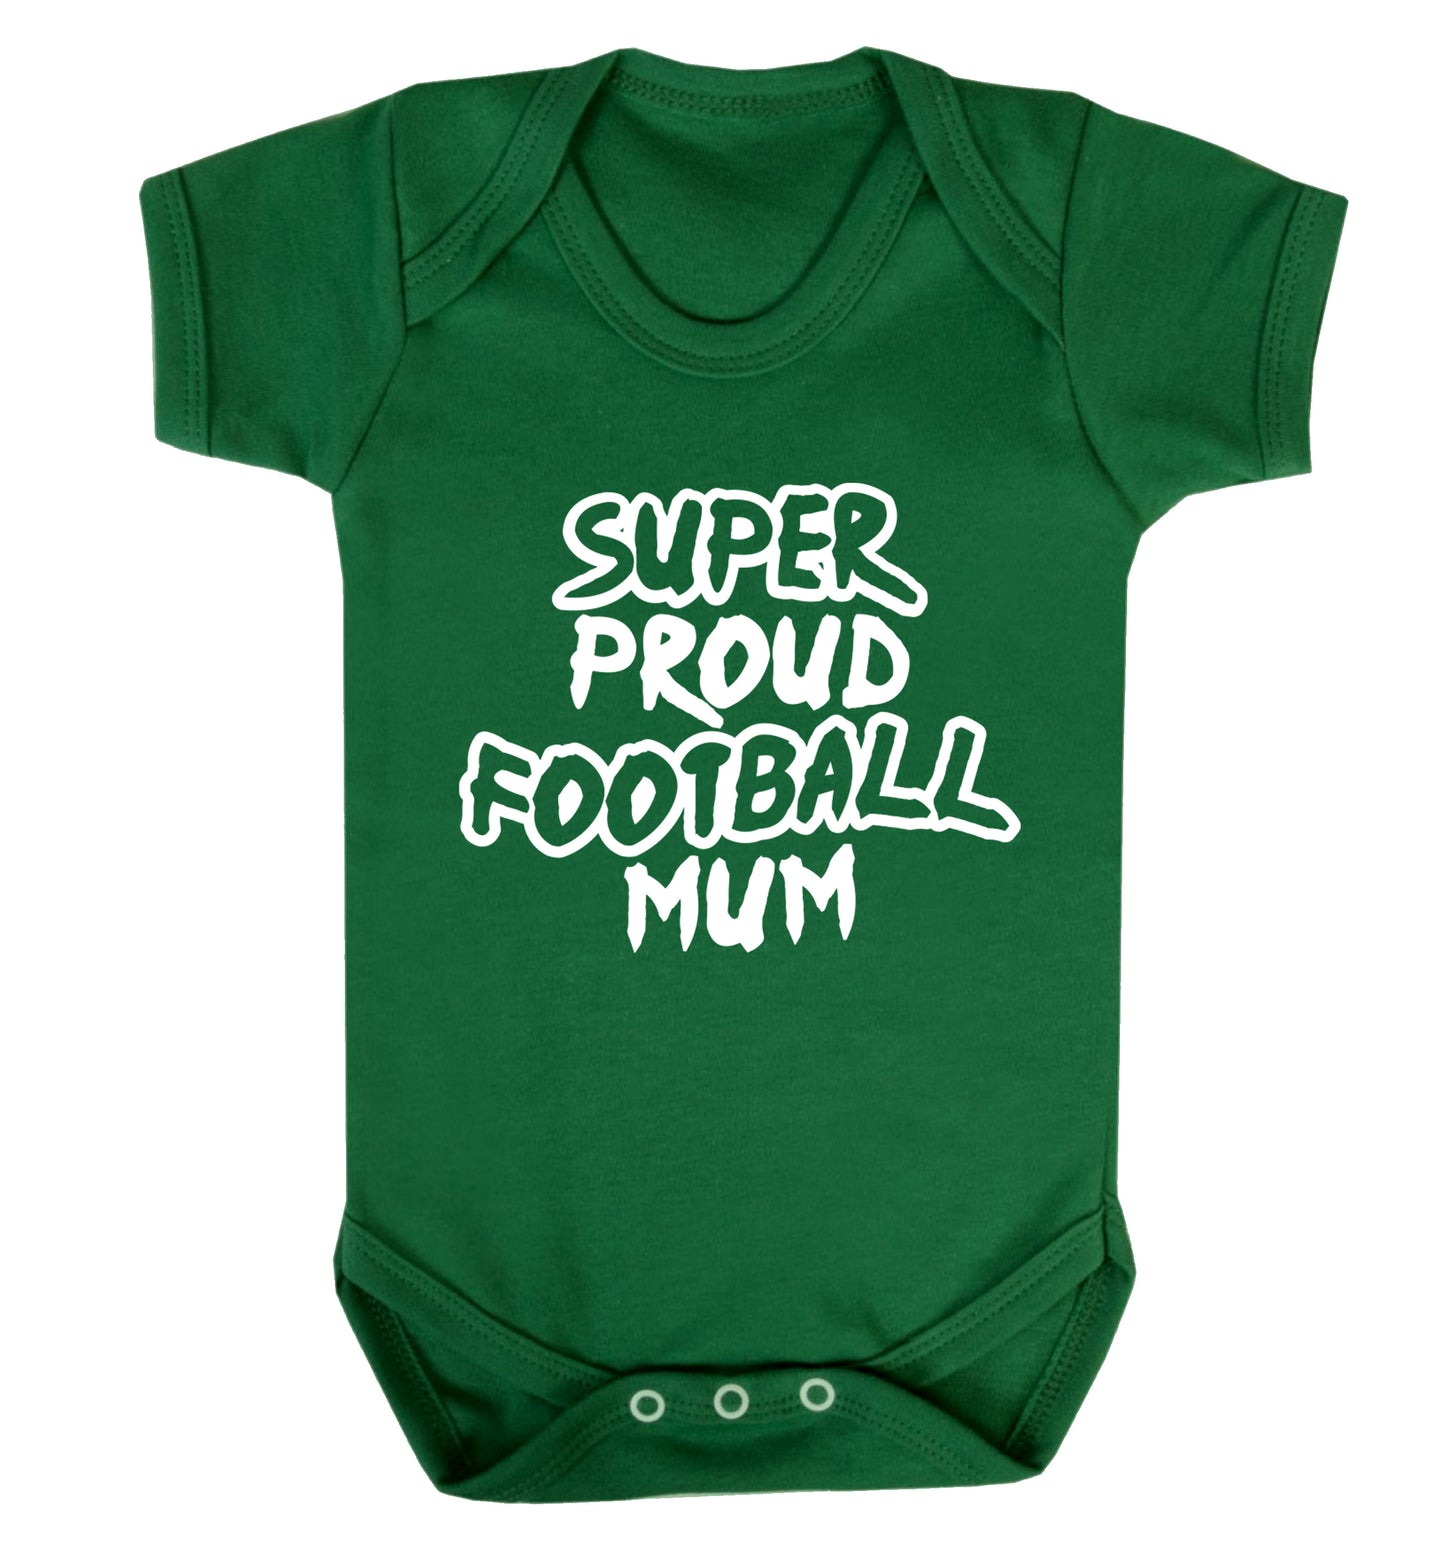 Super proud football mum Baby Vest green 18-24 months